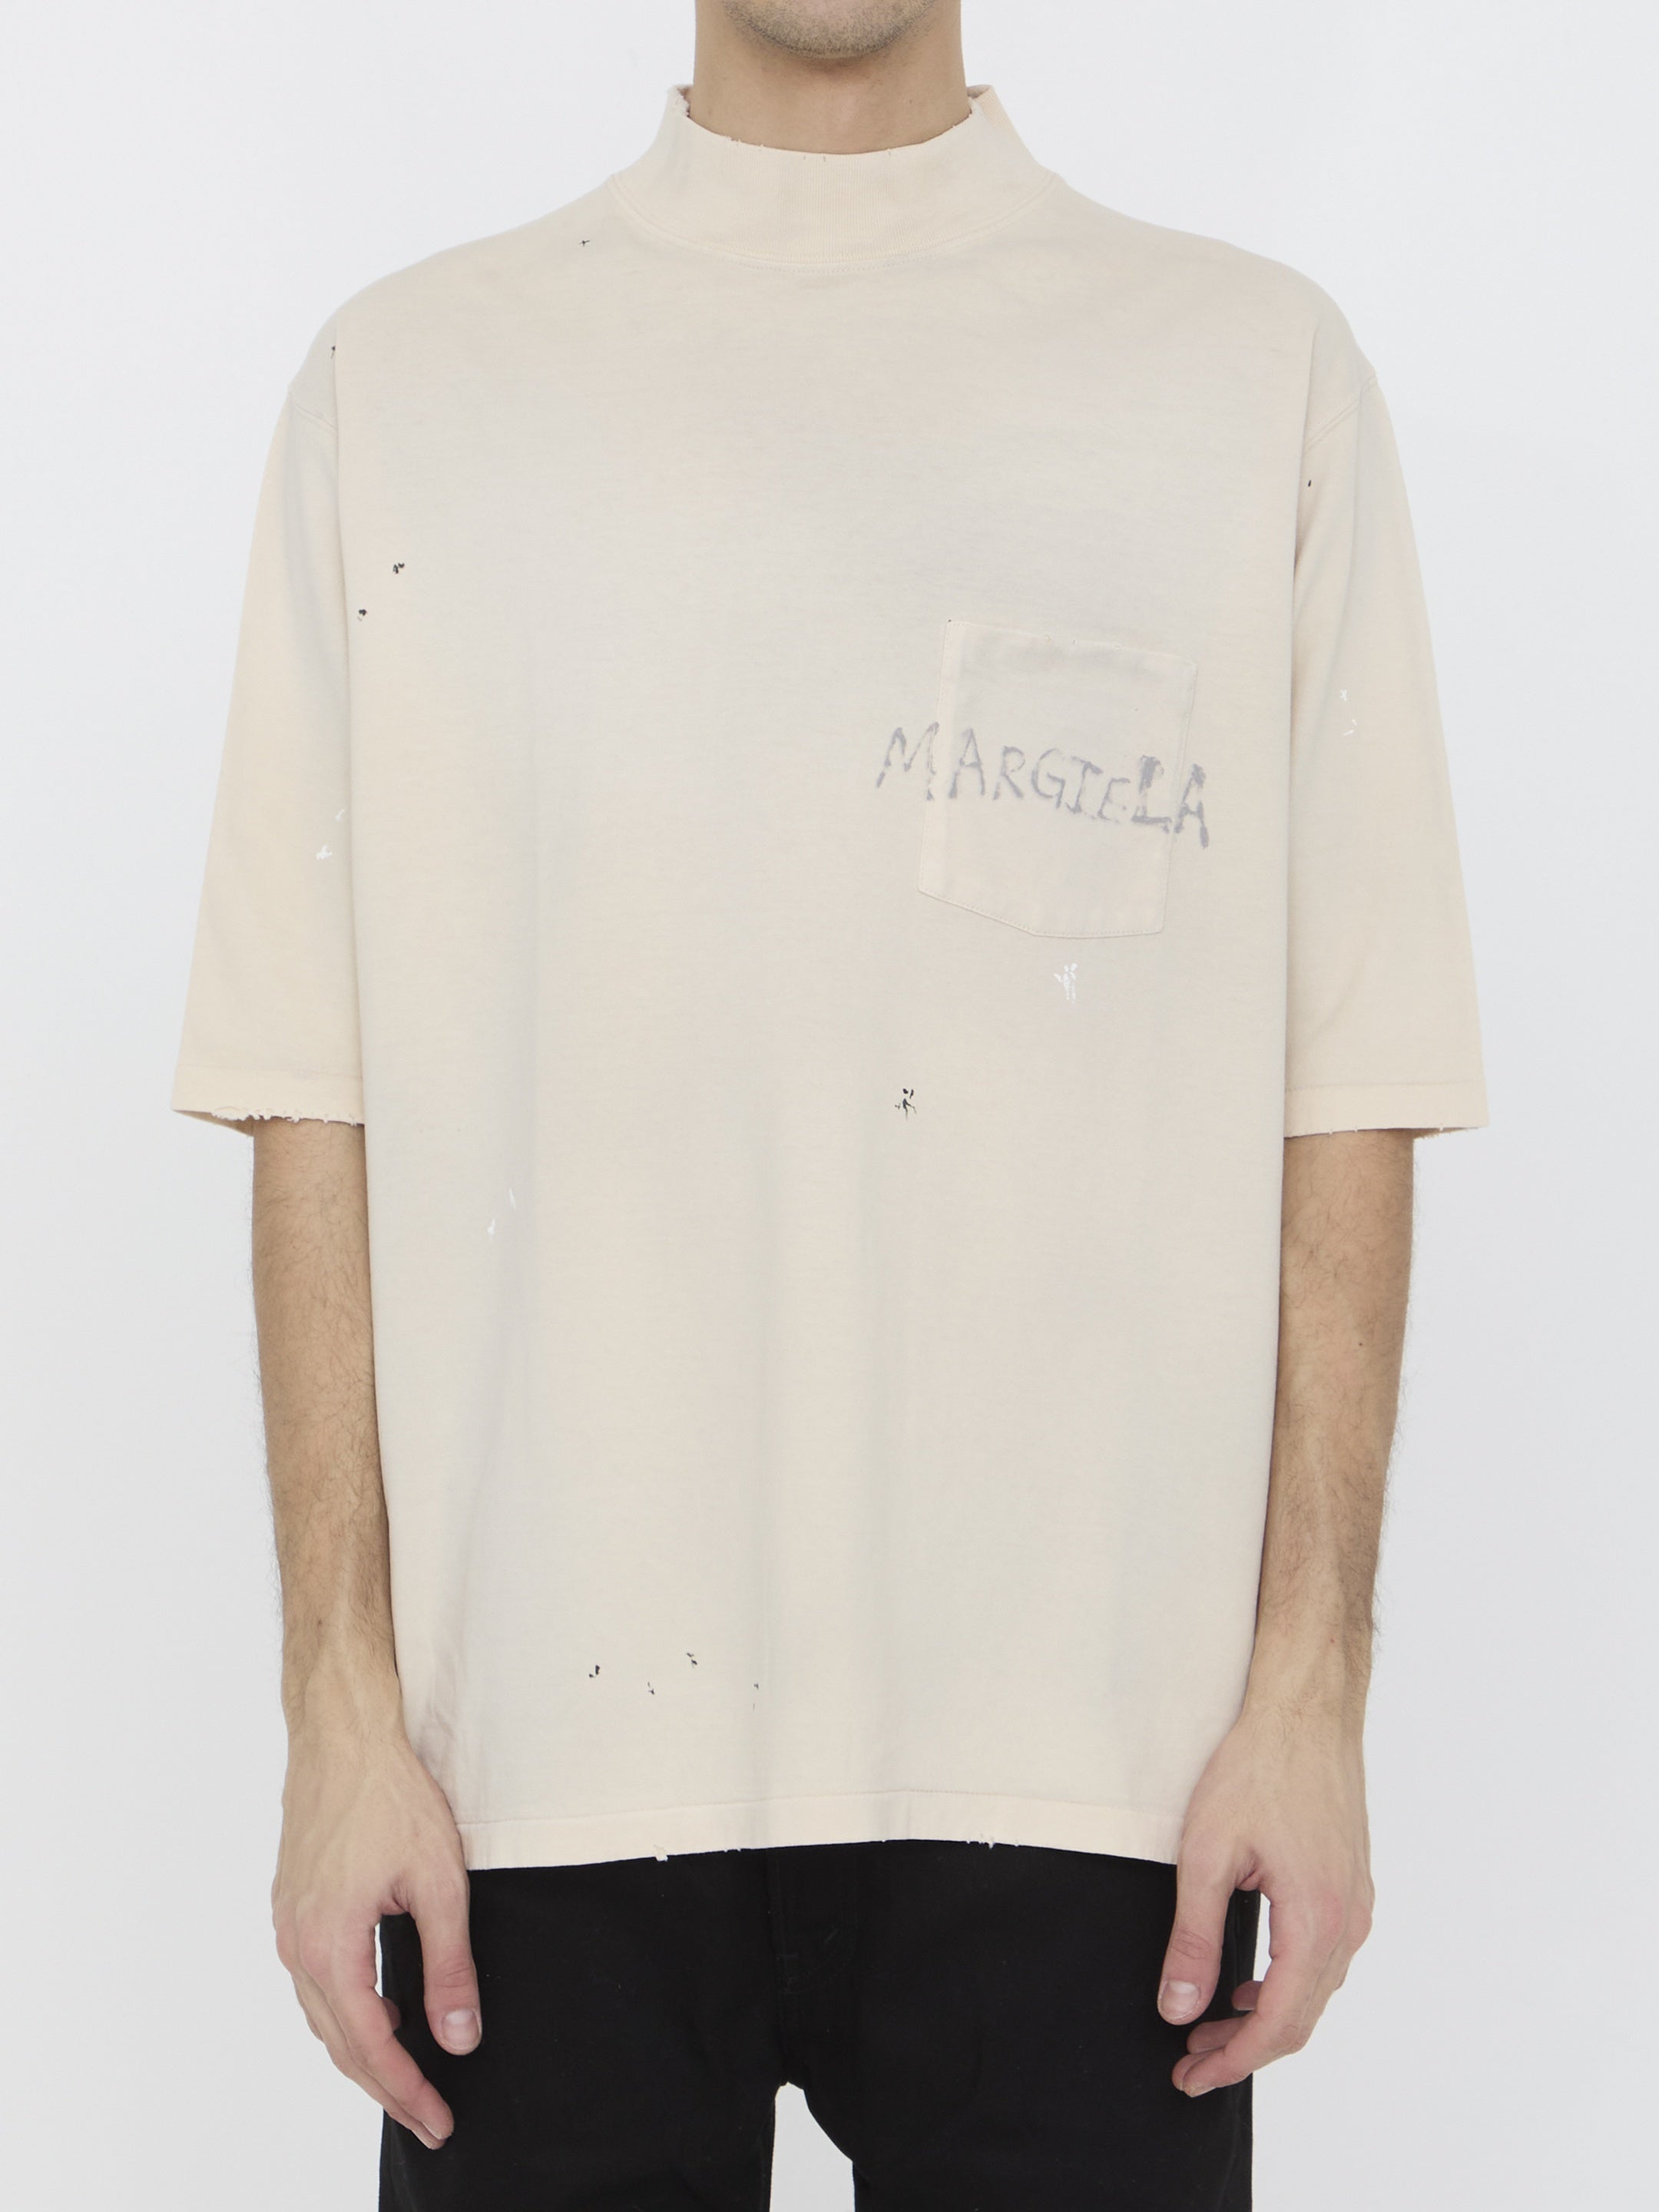 MAISON-MARGIELA-OUTLET-SALE-Logo-t-shirt-Shirts-L-BEIGE-ARCHIVE-COLLECTION.jpg